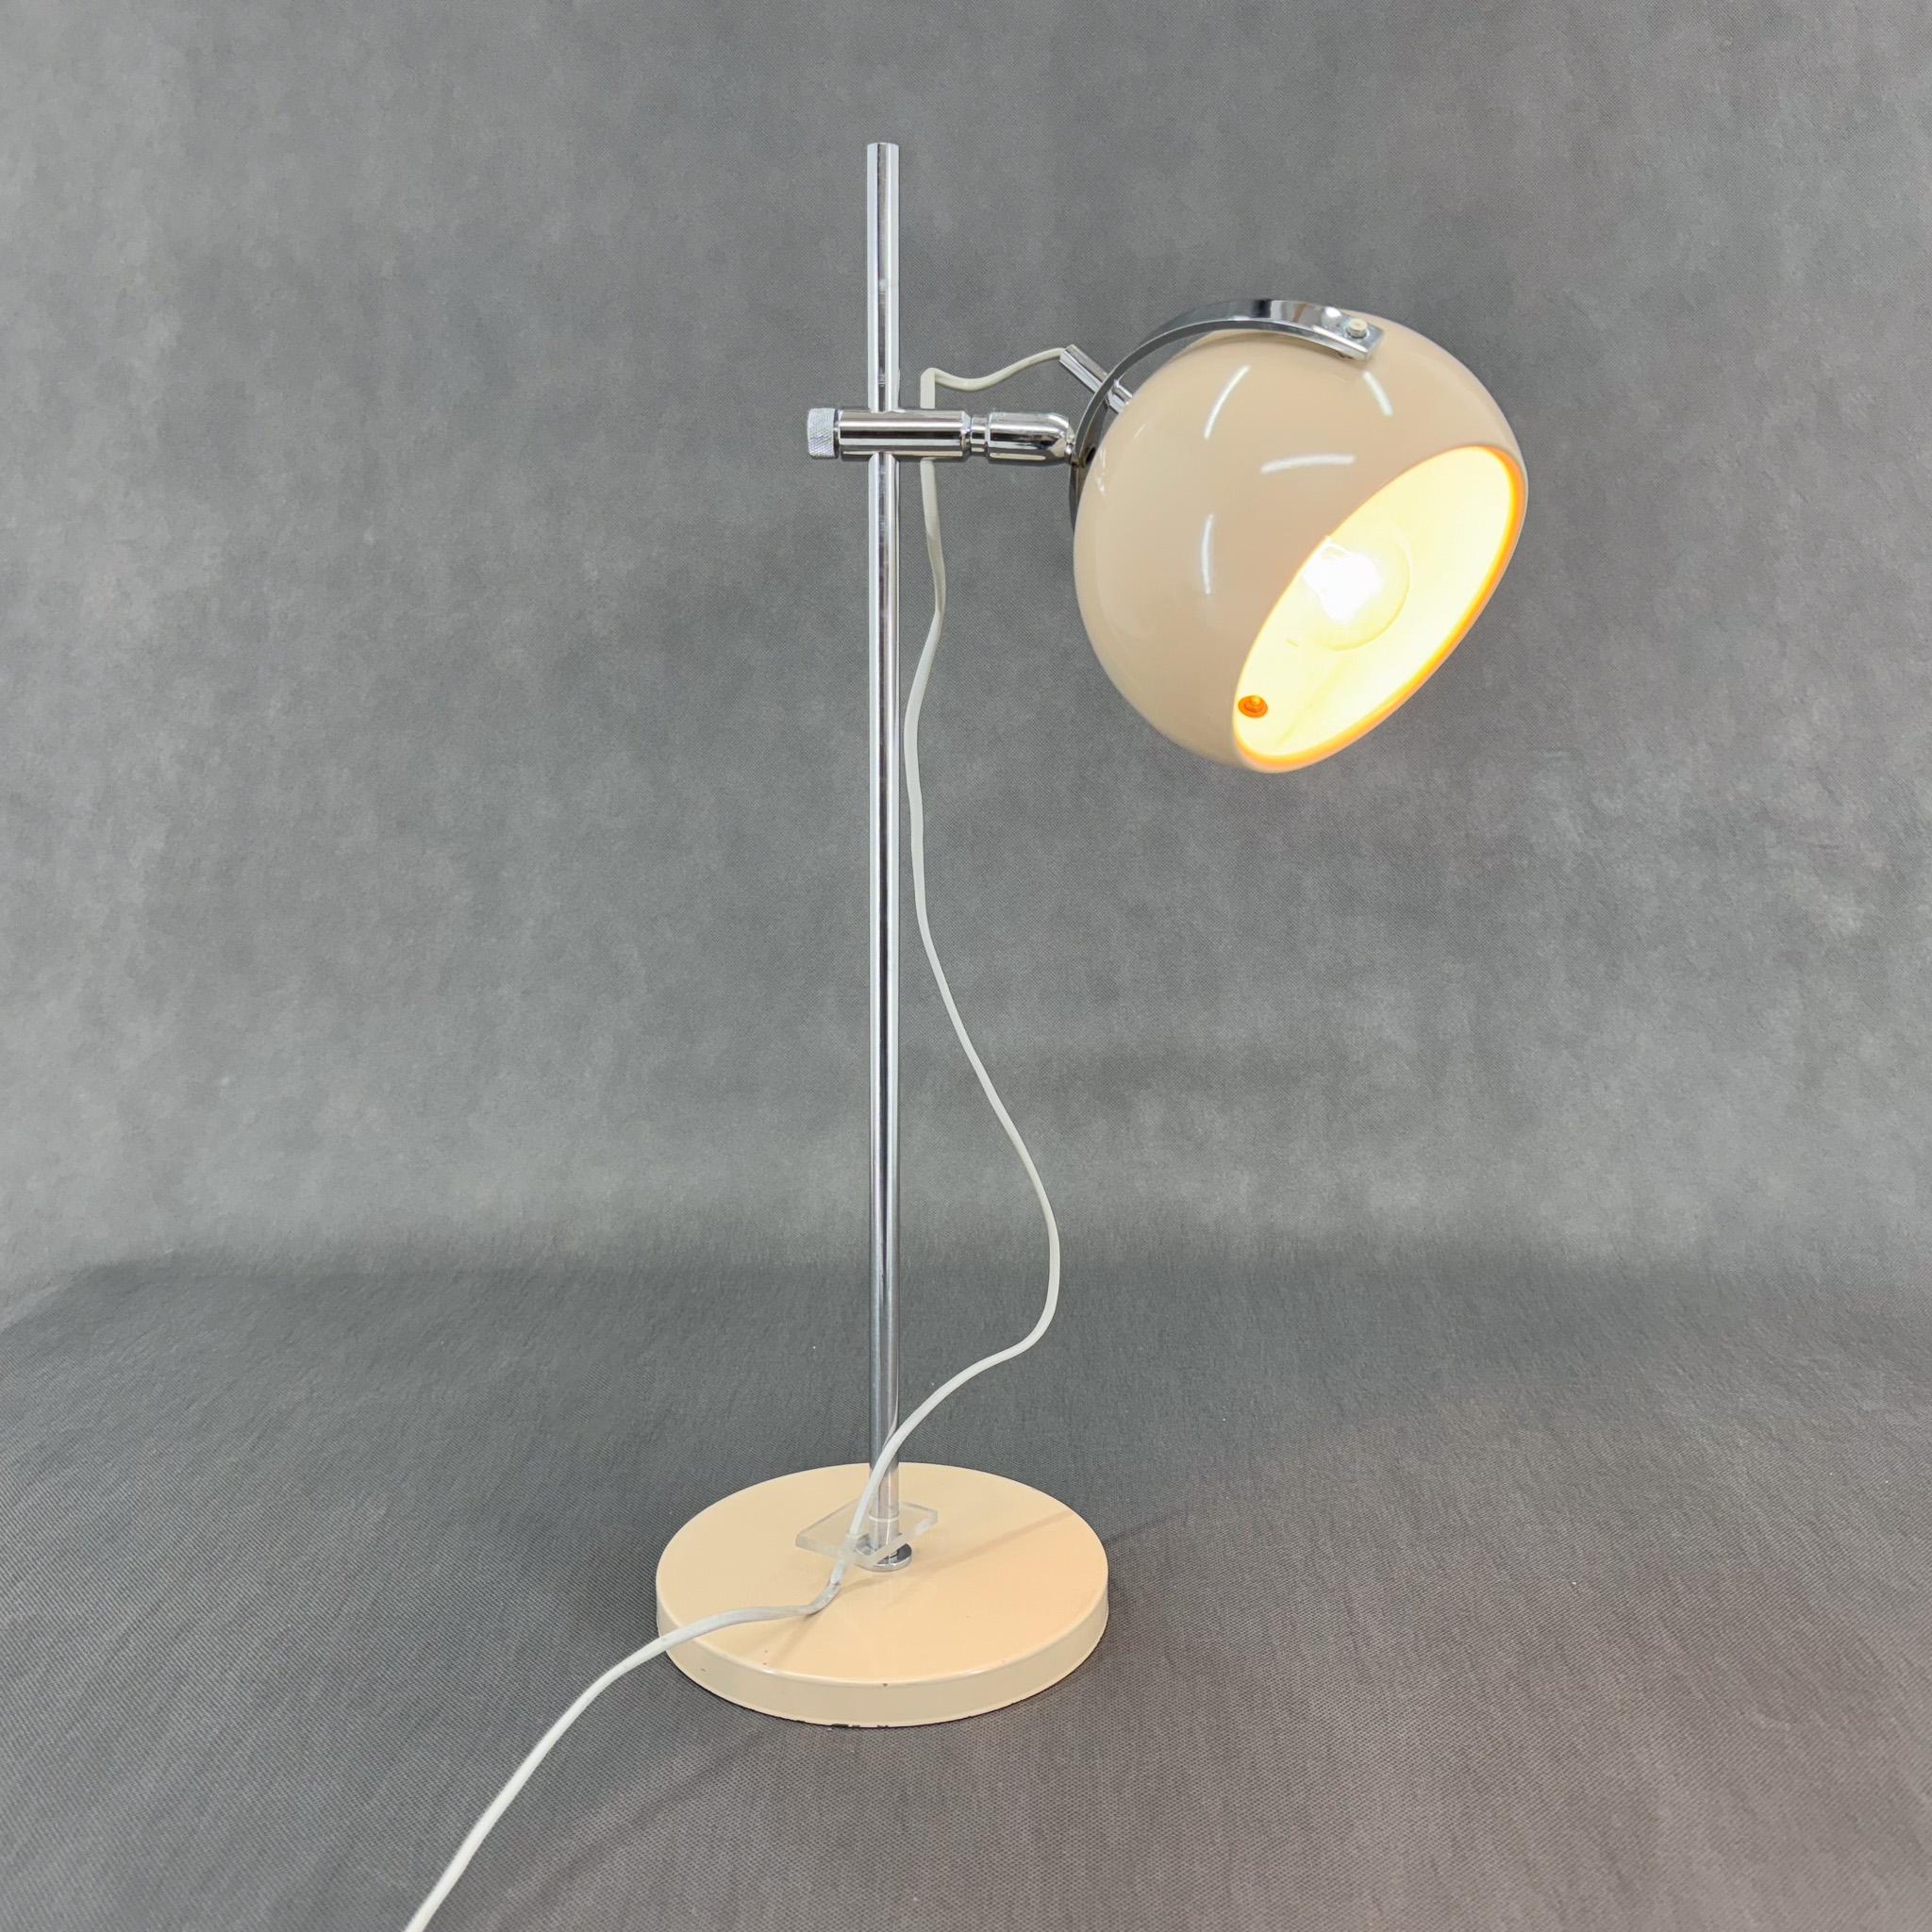 Vintage Space age Italienische Tischlampe. Der Lampenschirm ähnelt einem Augapfel und ist in alle Richtungen verstellbar, nach oben, unten und zur Seite.